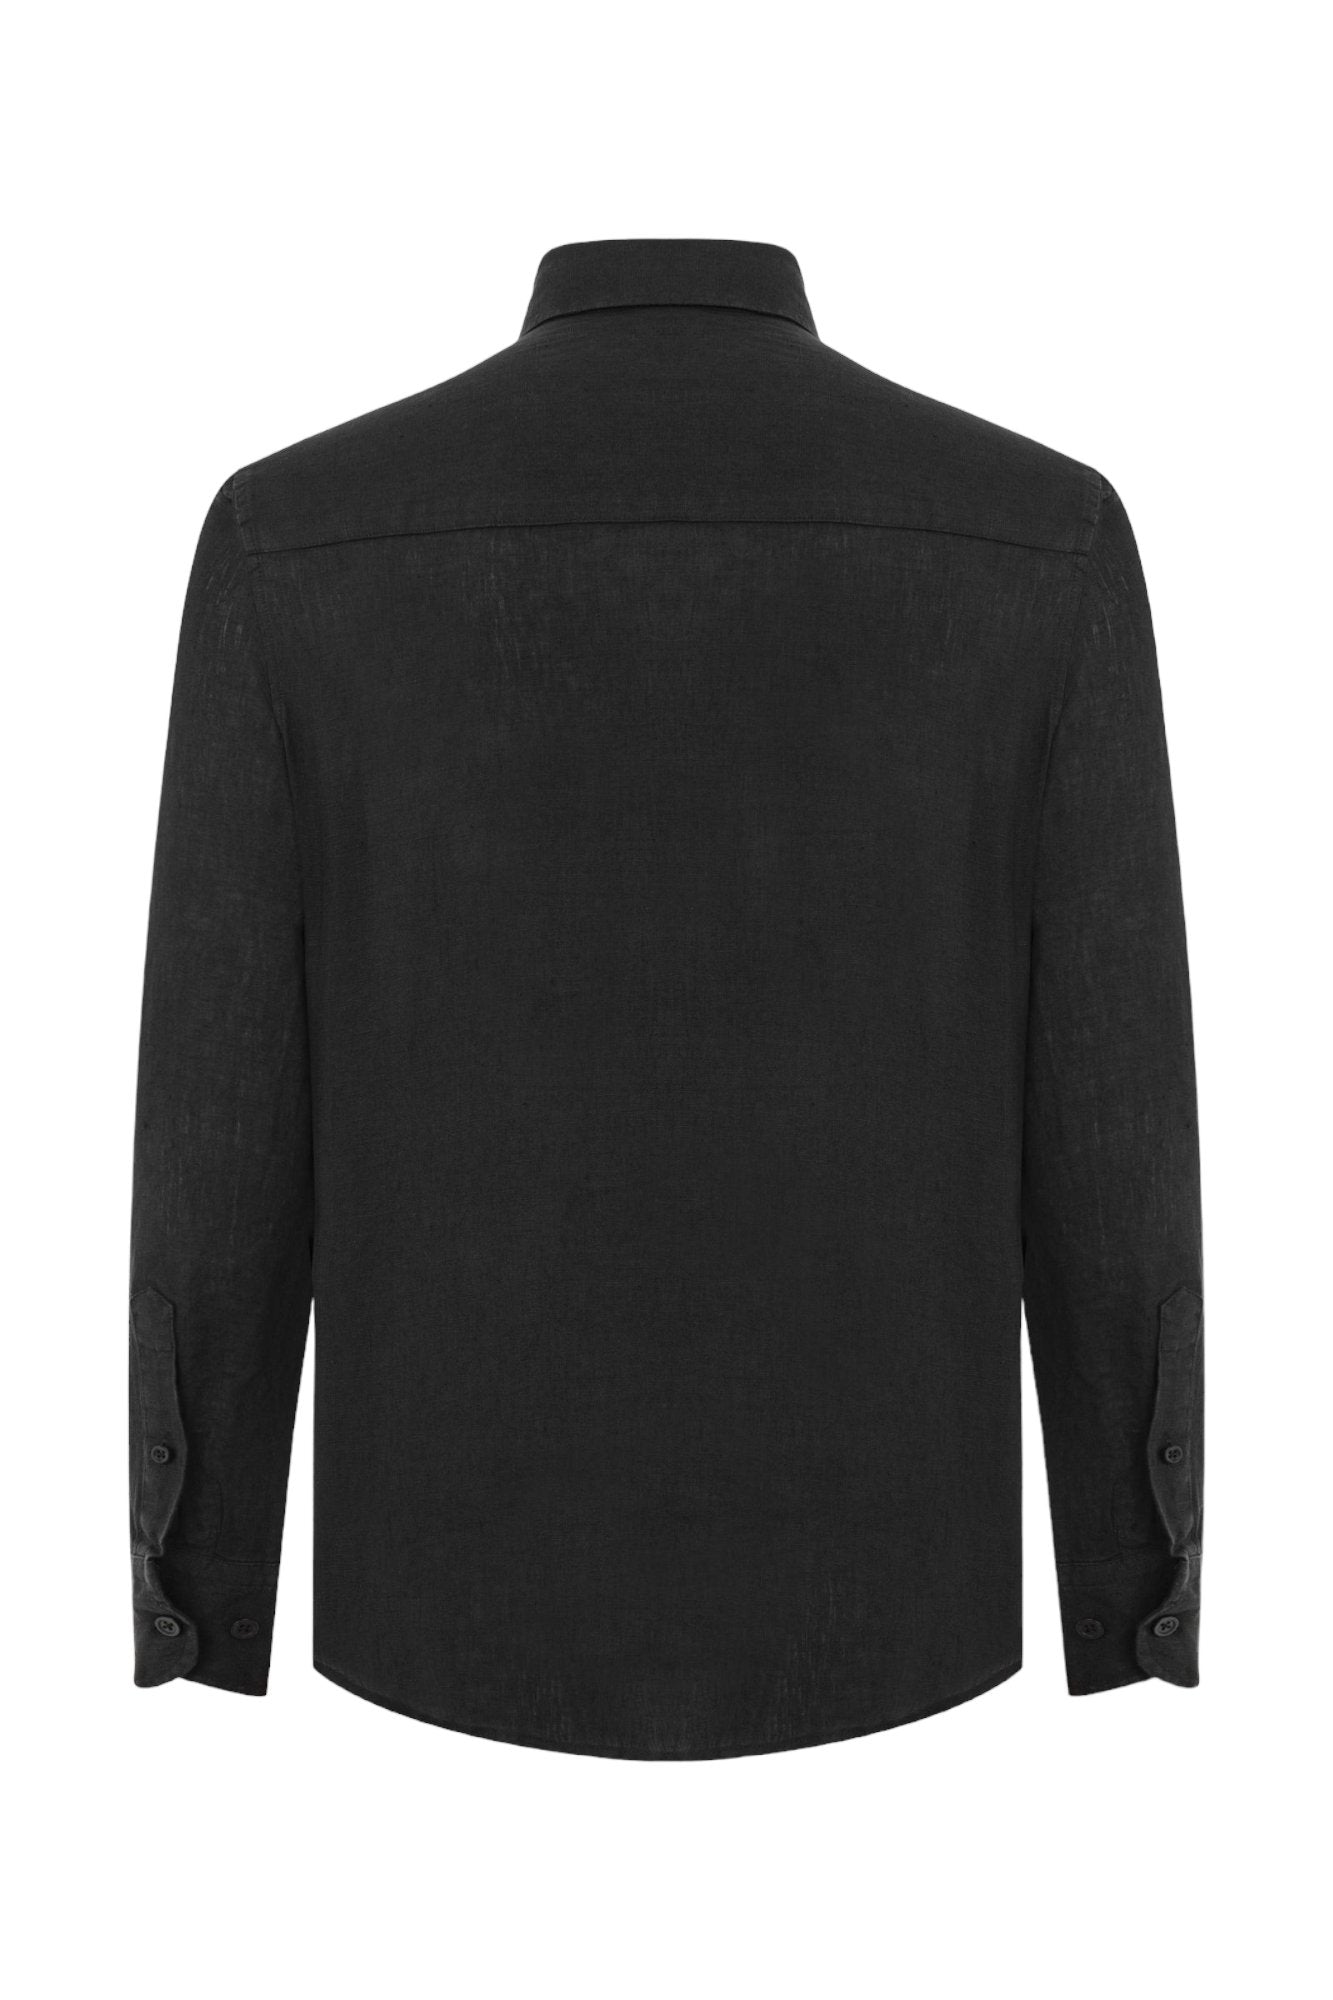 Classic Fit Linen Black Long Sleeve Shirt Shirt 99percenthandmade   